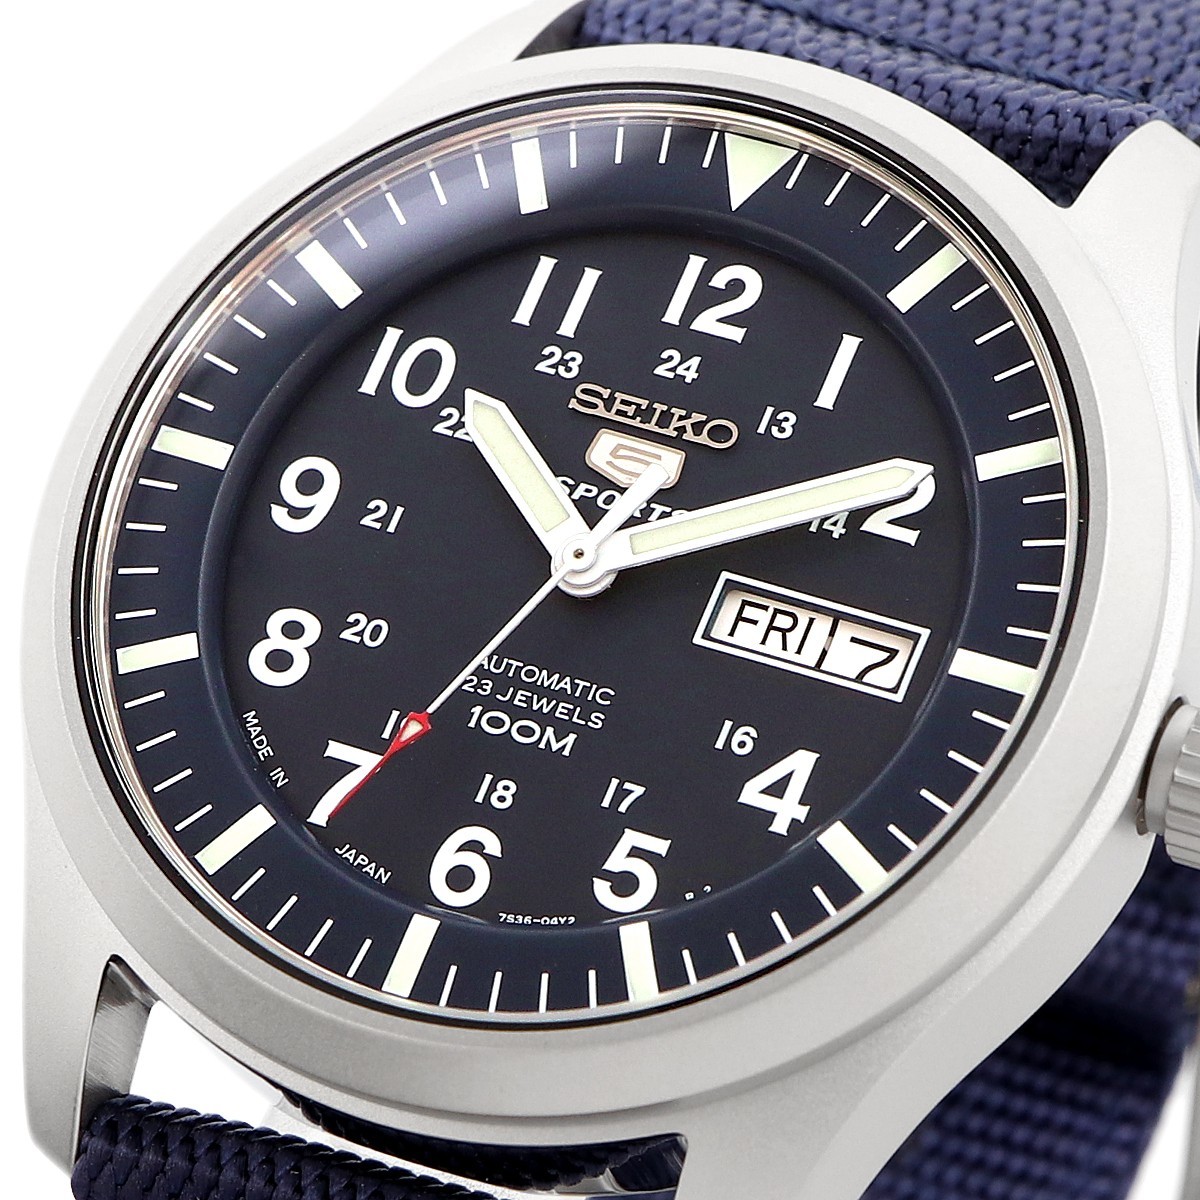 39 割引リアル 送料無料 新品 腕時計 Seiko セイコー 海外モデル Made In Japan セイコー5 自動巻き ビジネス カジュアル メンズ Snzg11j1 セイコー ブランド腕時計 アクセサリー 時計 Zionseguros Com Br